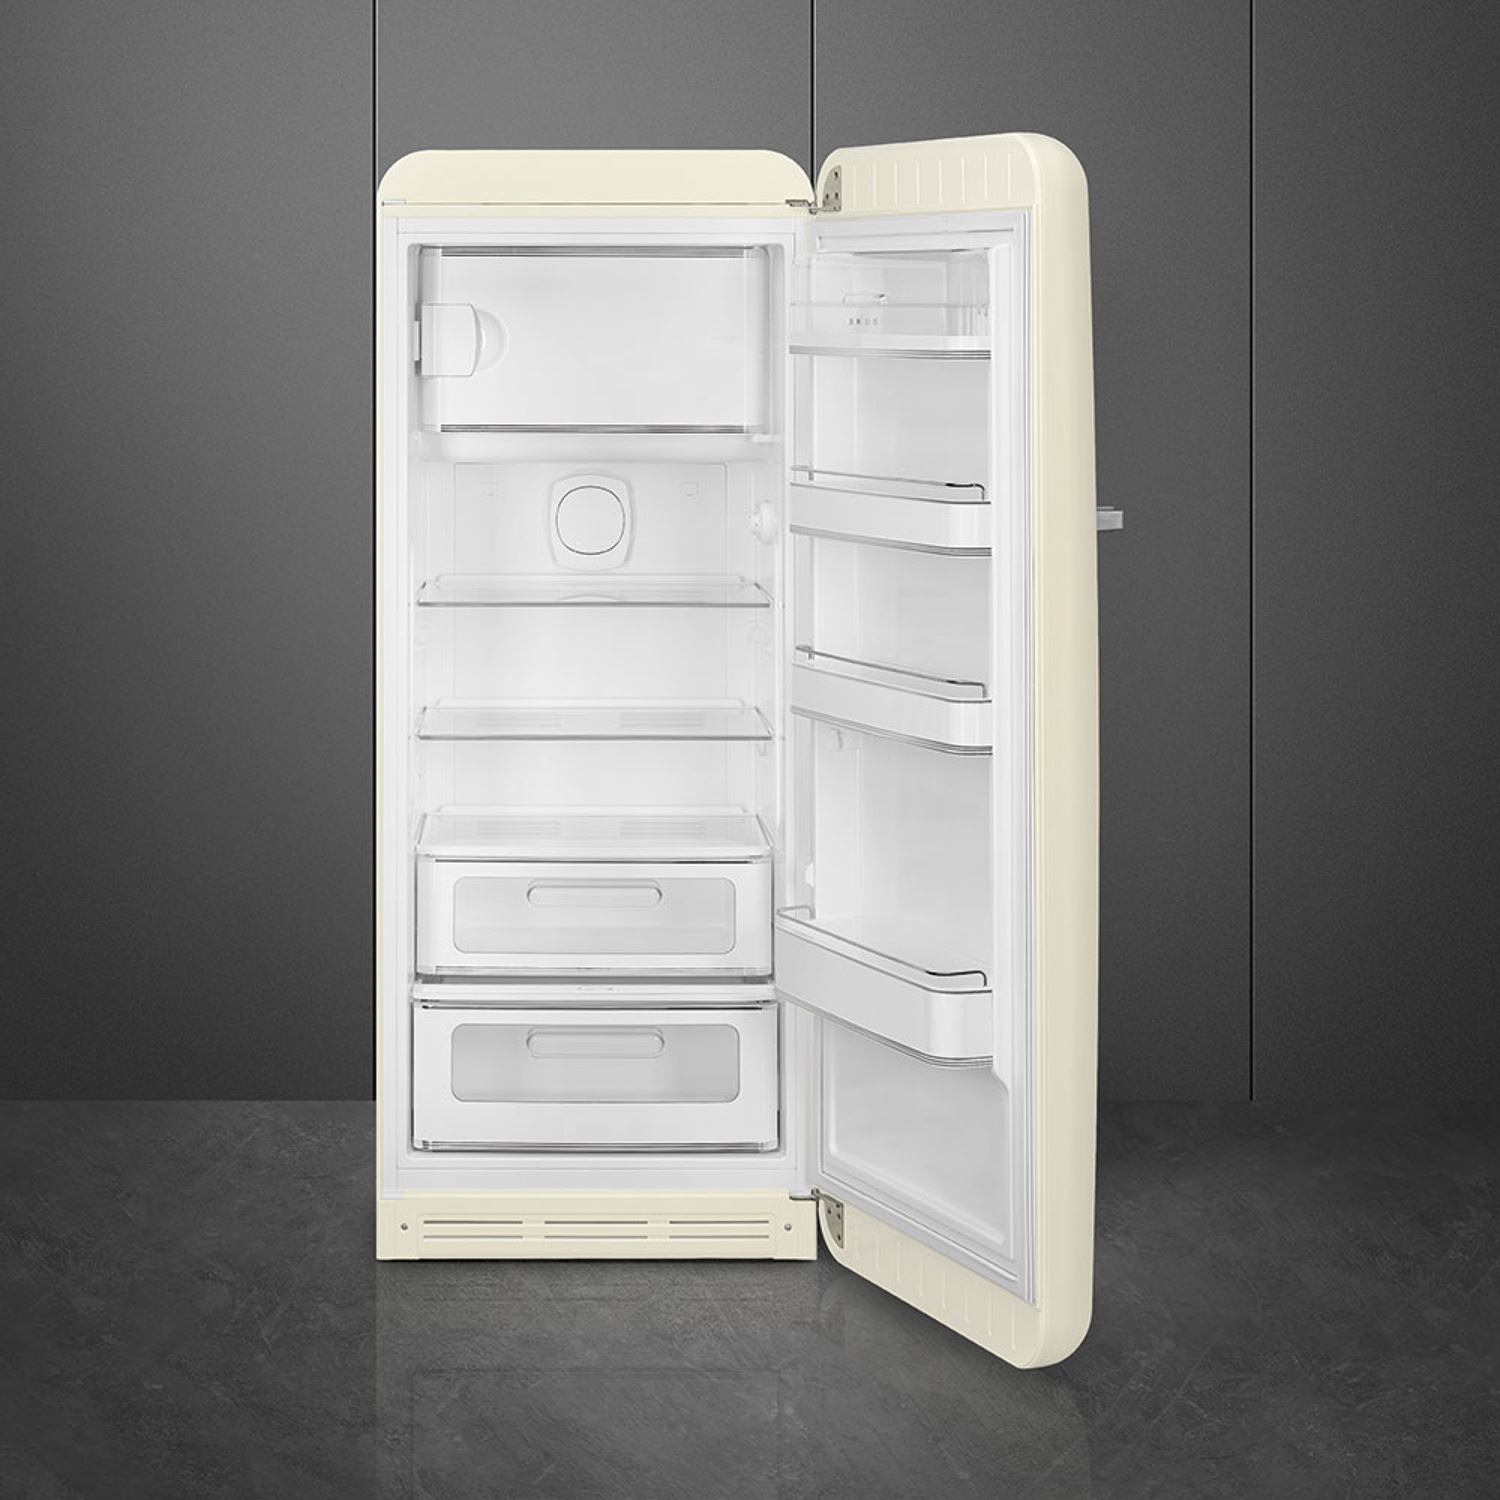 Thiết kế các ngăn kệ bên trong tủ lạnh SMEG, cửa đơn, độc lập, 50’S STYLE FAB28RCR3 535.14.545